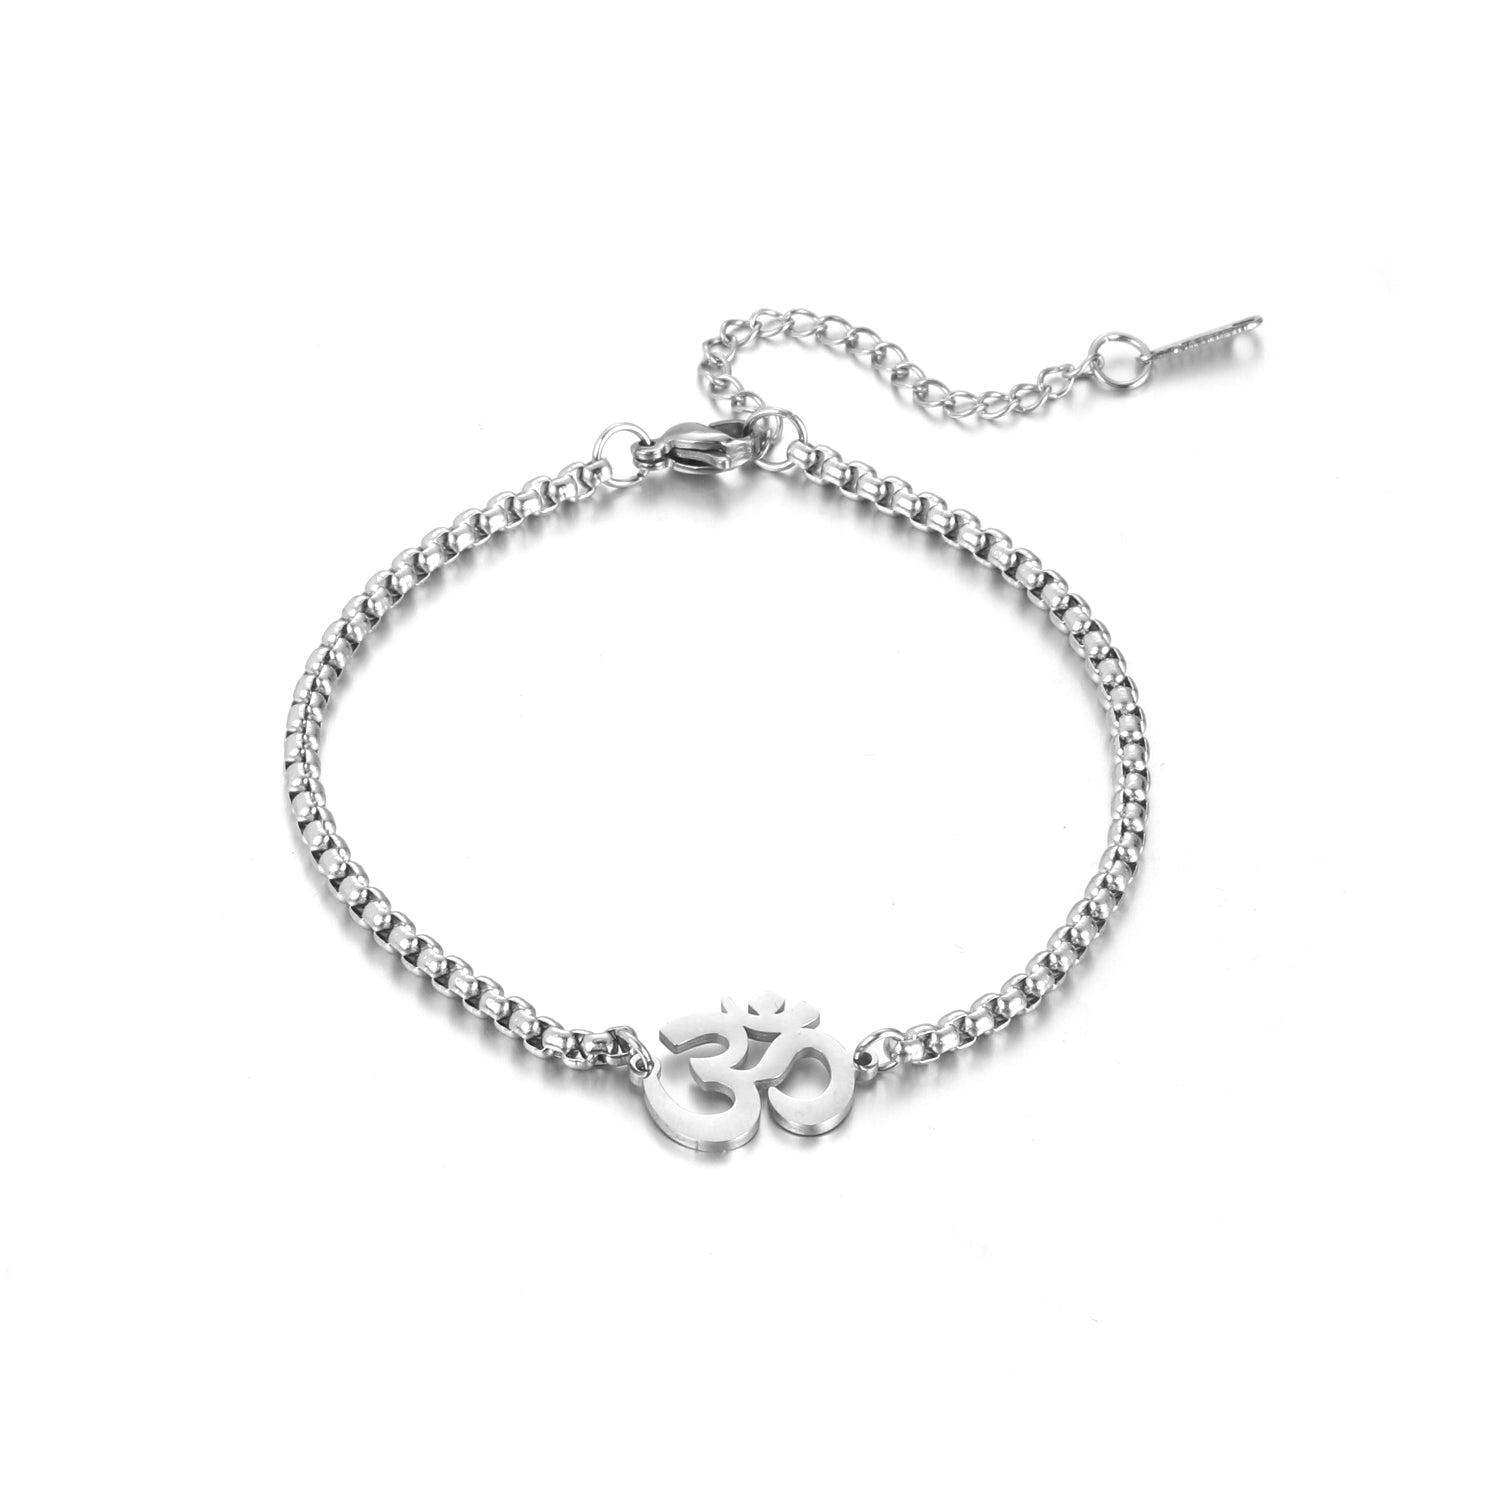 Buy Men's Aum Bracelet in Silver - Aumkaara Bracelet